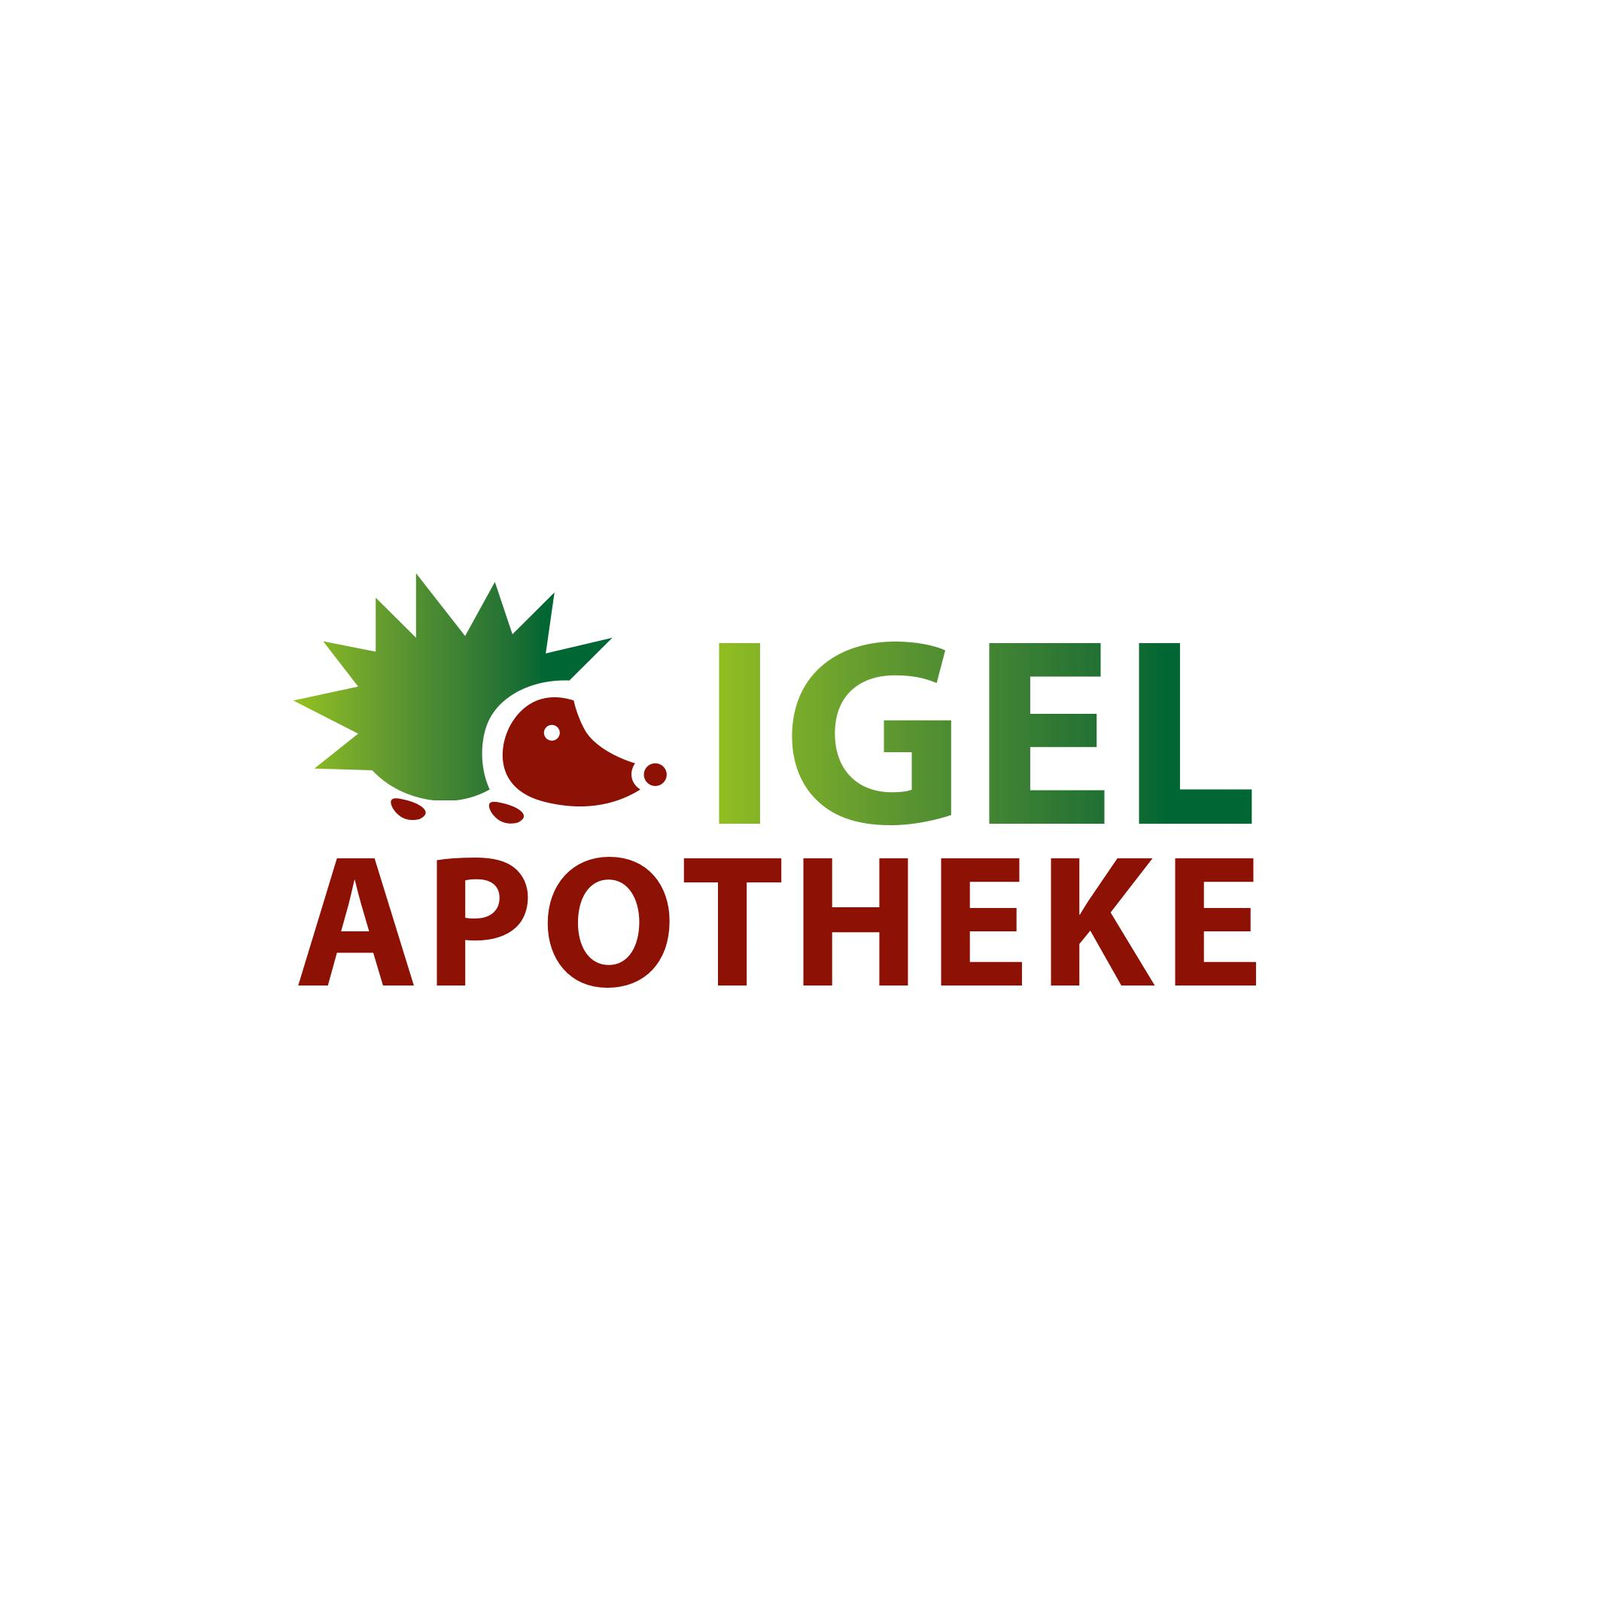 Igel-Apotheke in Laatzen - Logo